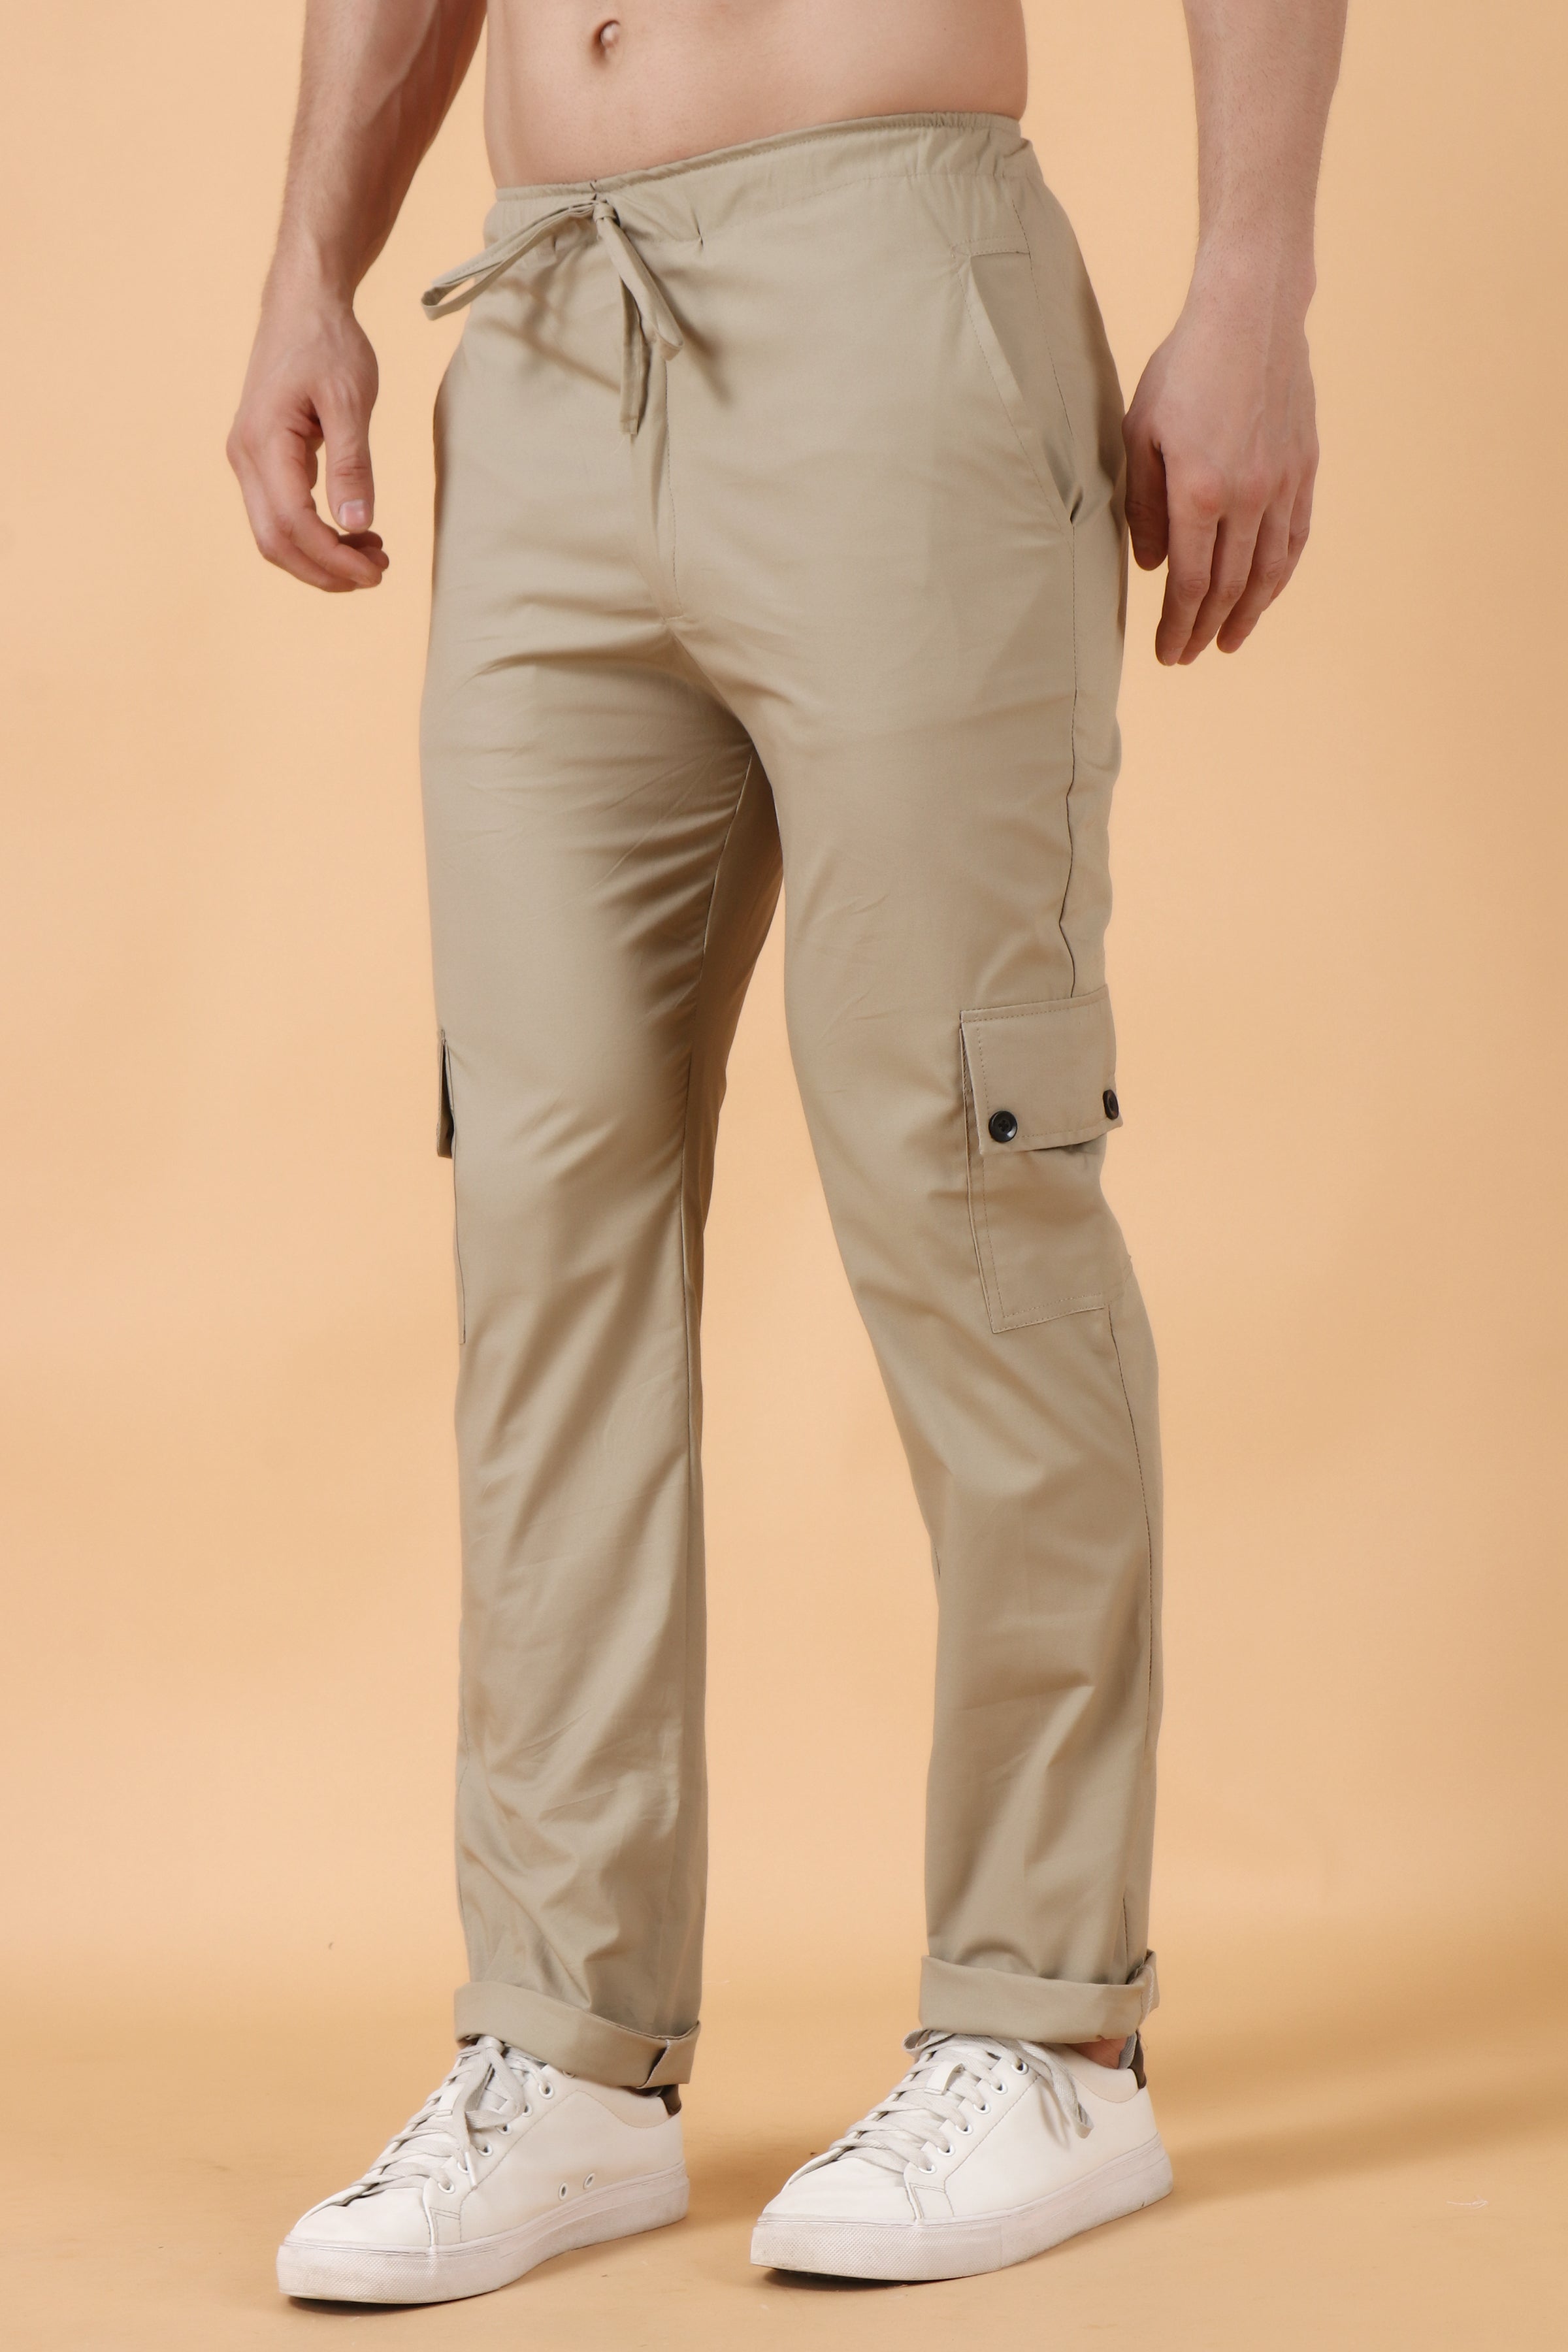 METRONAUT Slim Fit Men Pure Cotton Beige Trousers  Buy METRONAUT Slim Fit  Men Pure Cotton Beige Trousers Online at Best Prices in India  Flipkartcom